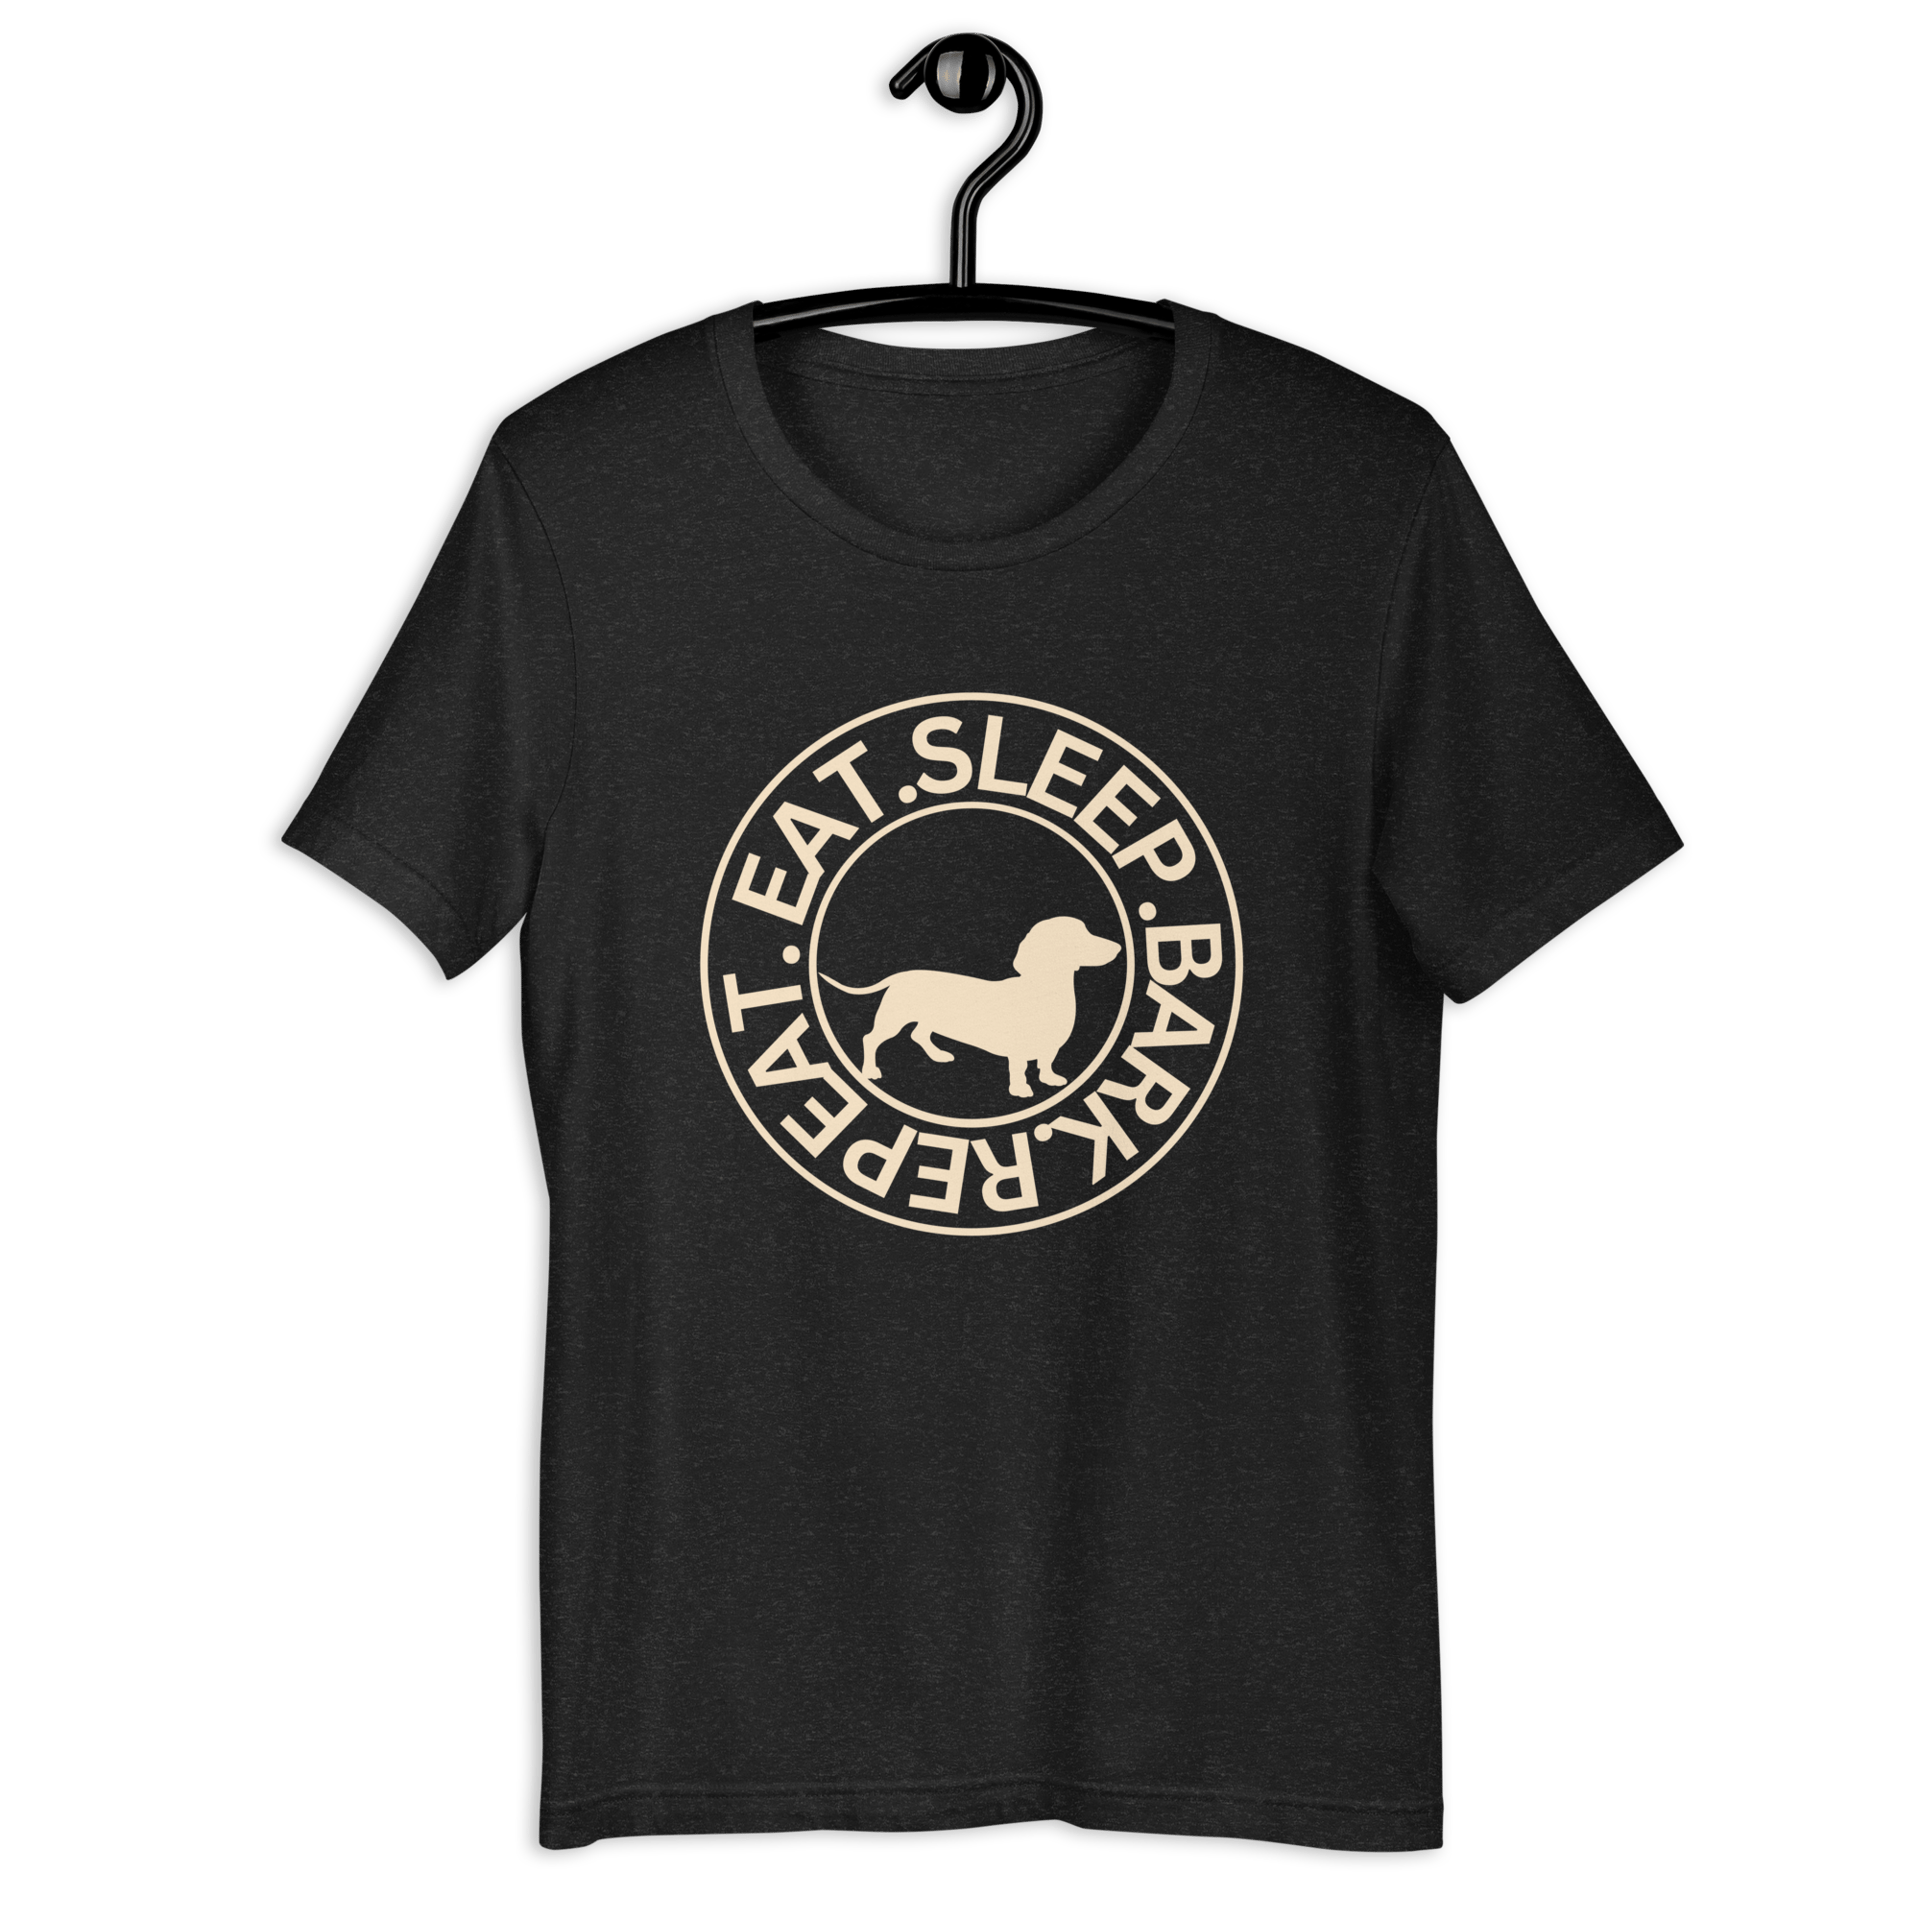 Eat Sleep Bark Repeat Transylvanian Hound (Erdélyi Kopó) Unisex T-Shirt. Black